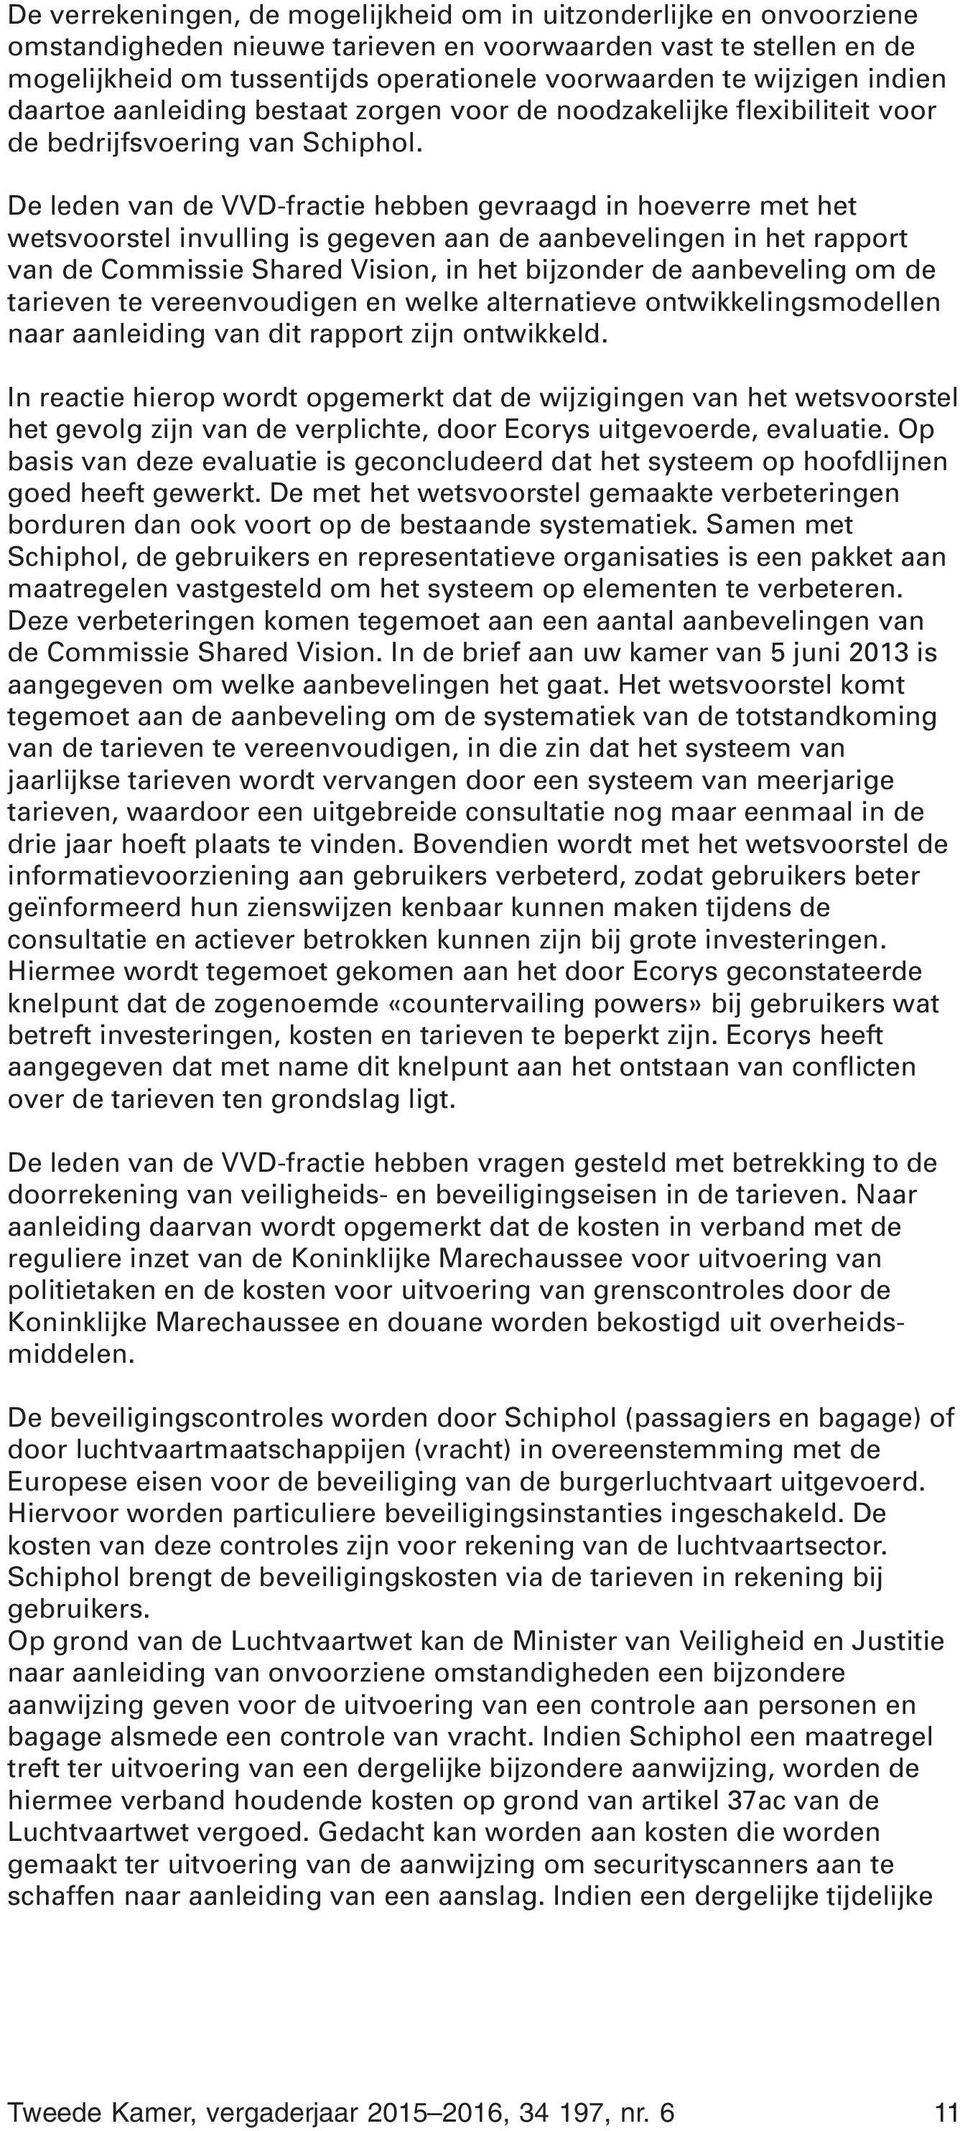 De leden van de VVD-fractie hebben gevraagd in hoeverre met het wetsvoorstel invulling is gegeven aan de aanbevelingen in het rapport van de Commissie Shared Vision, in het bijzonder de aanbeveling